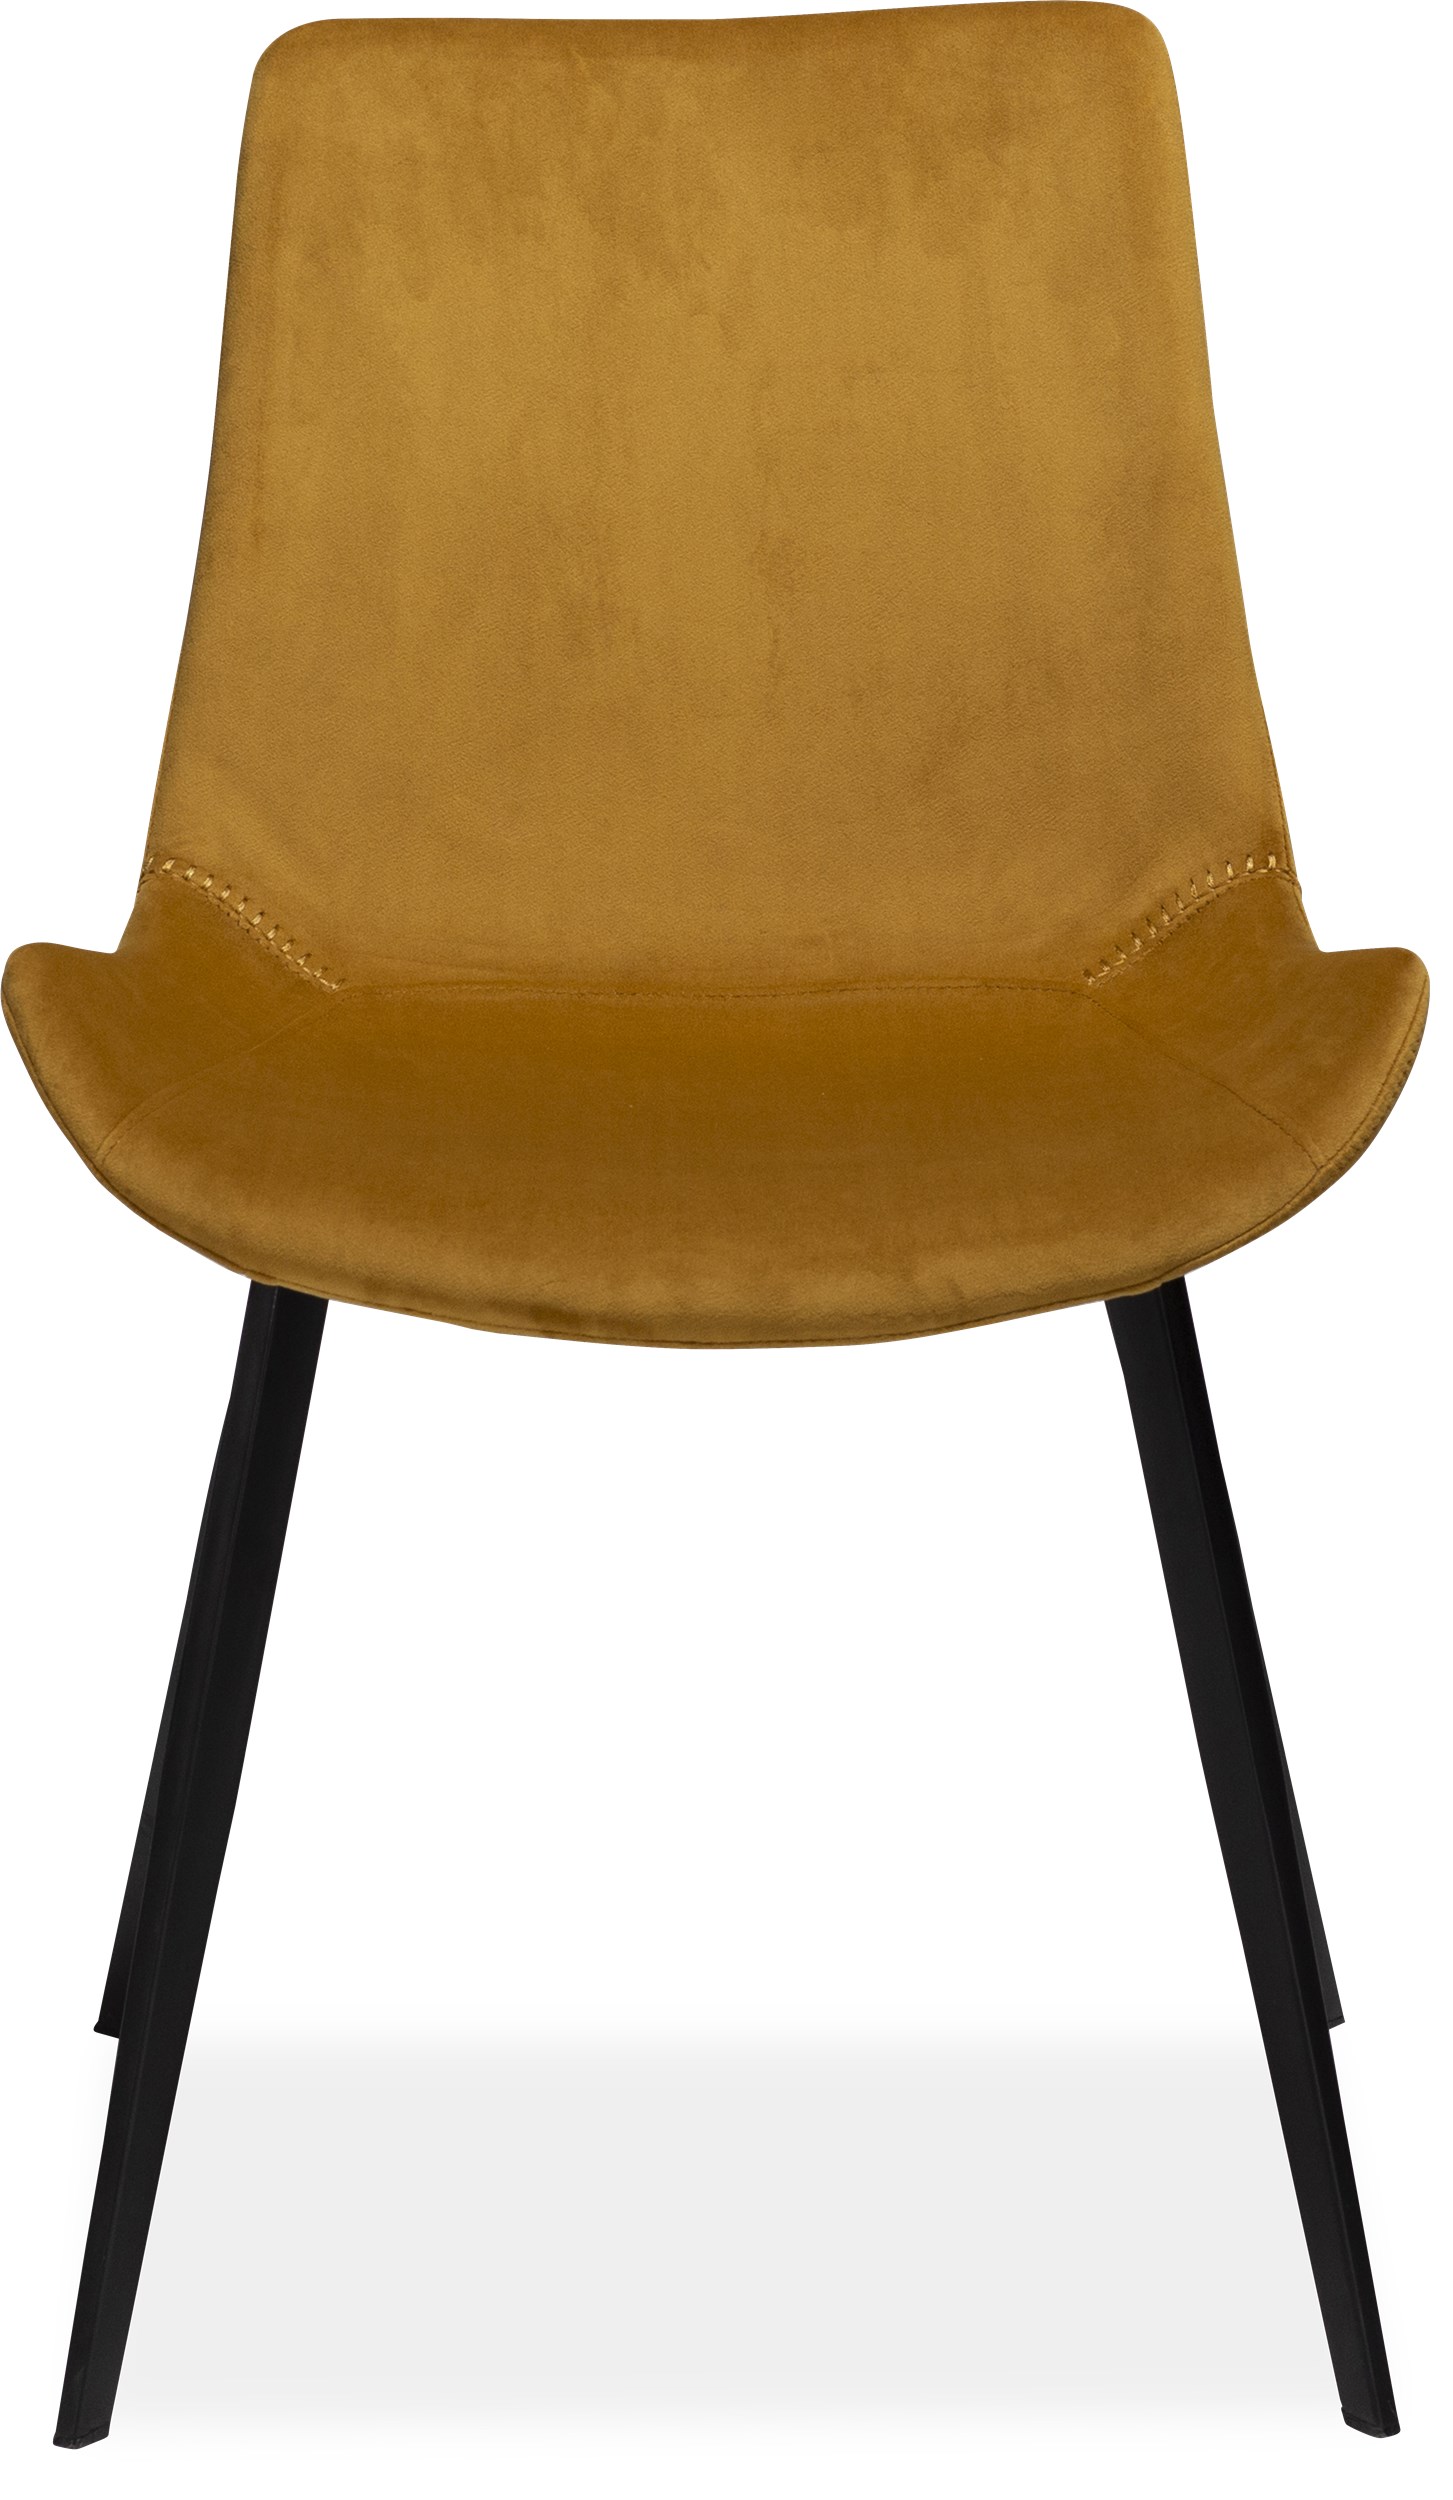 Hype matstol - Sits i mustard yellow velour och ben i svartlackerad metall